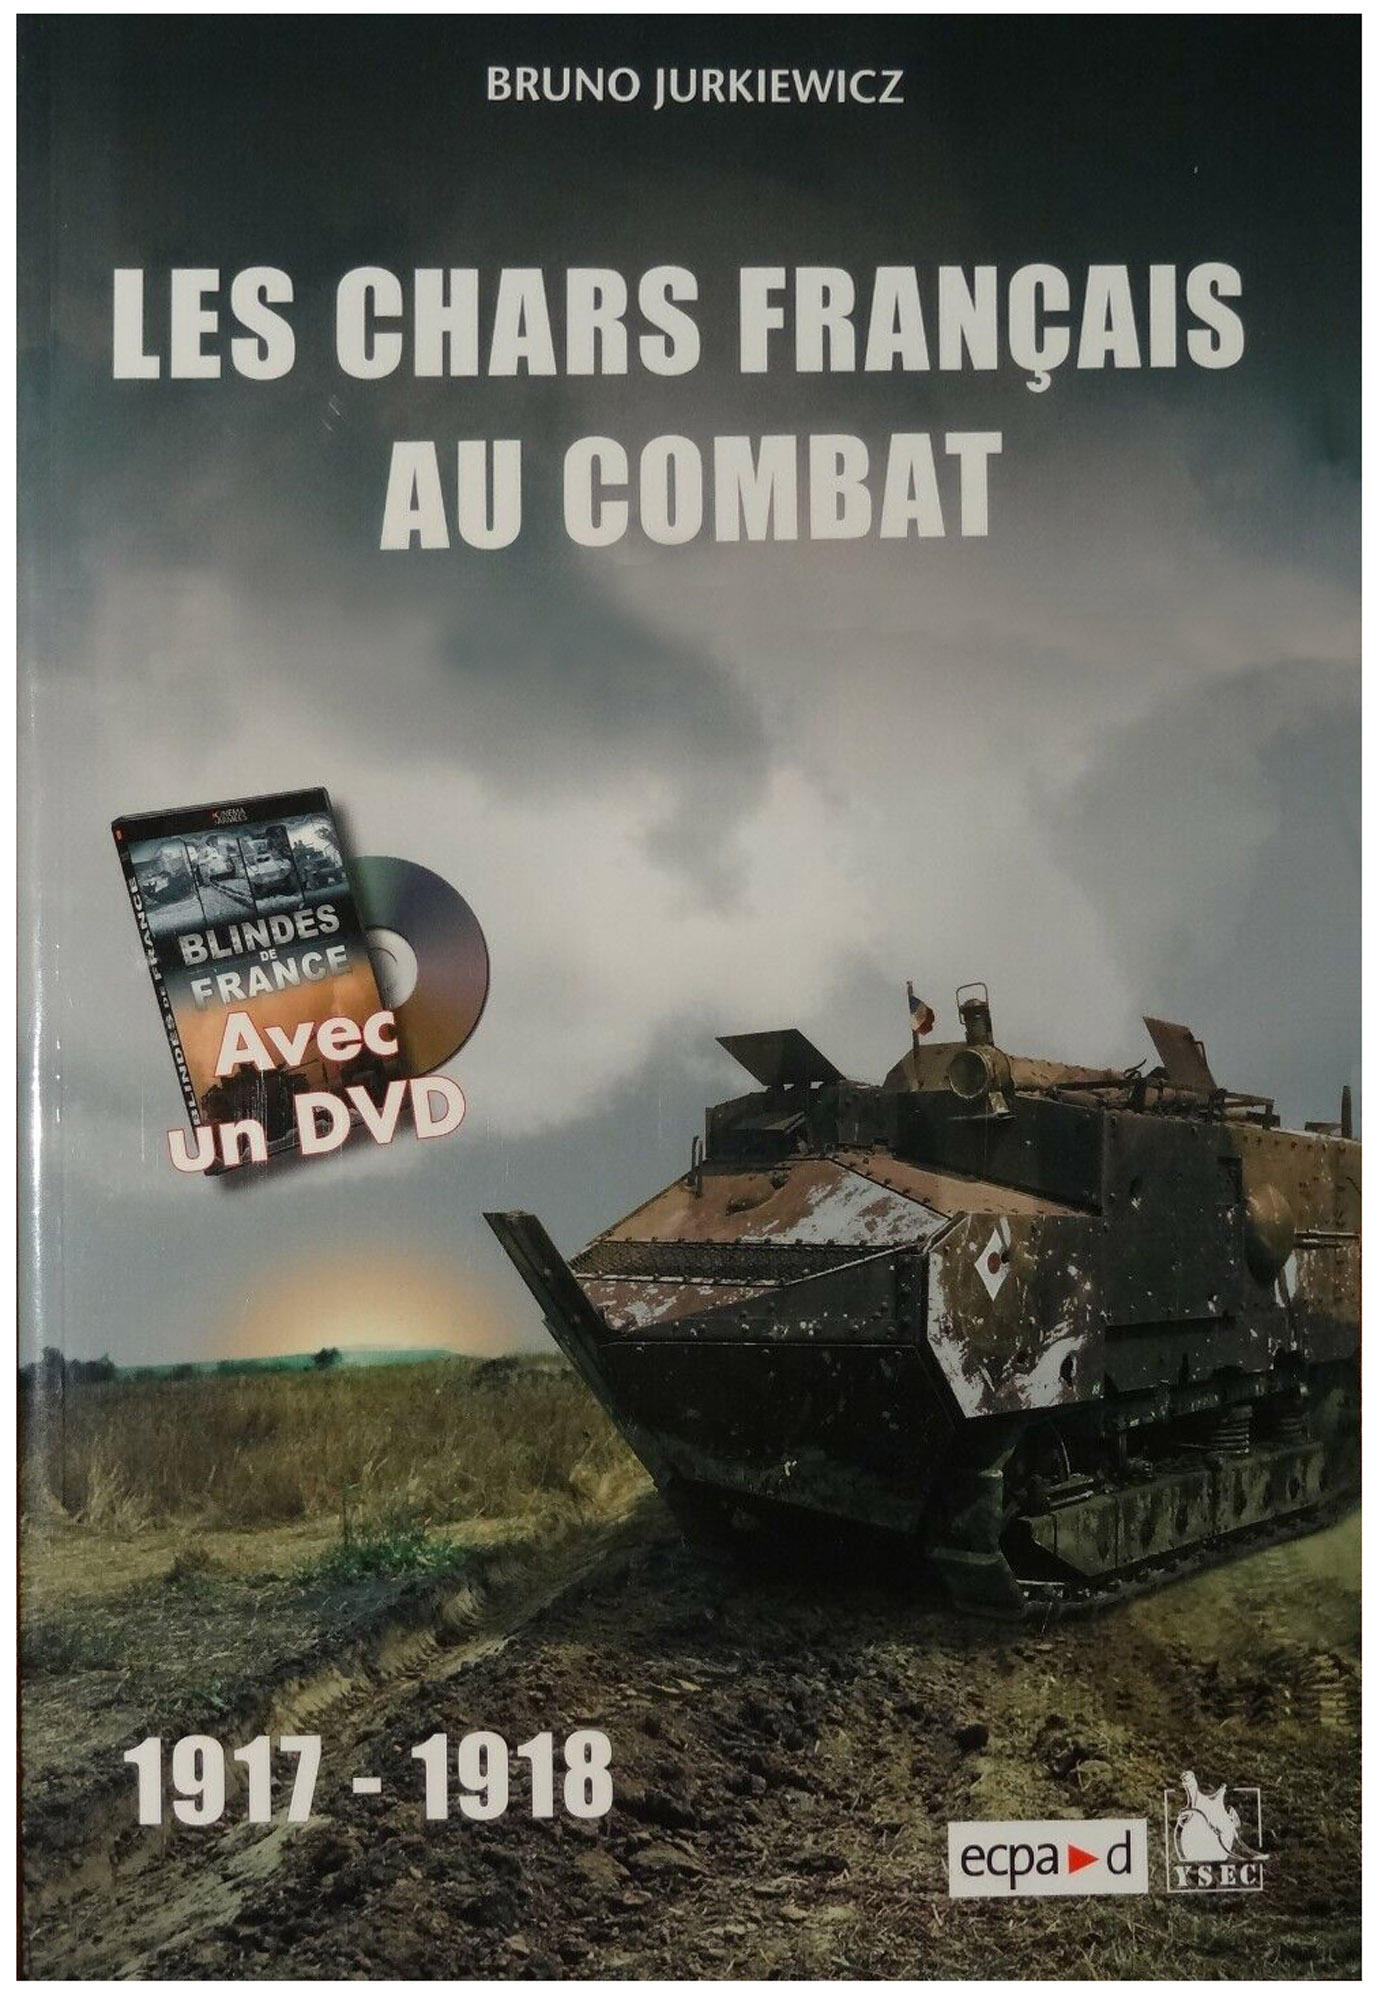 Les chars français au combat (01a).jpg